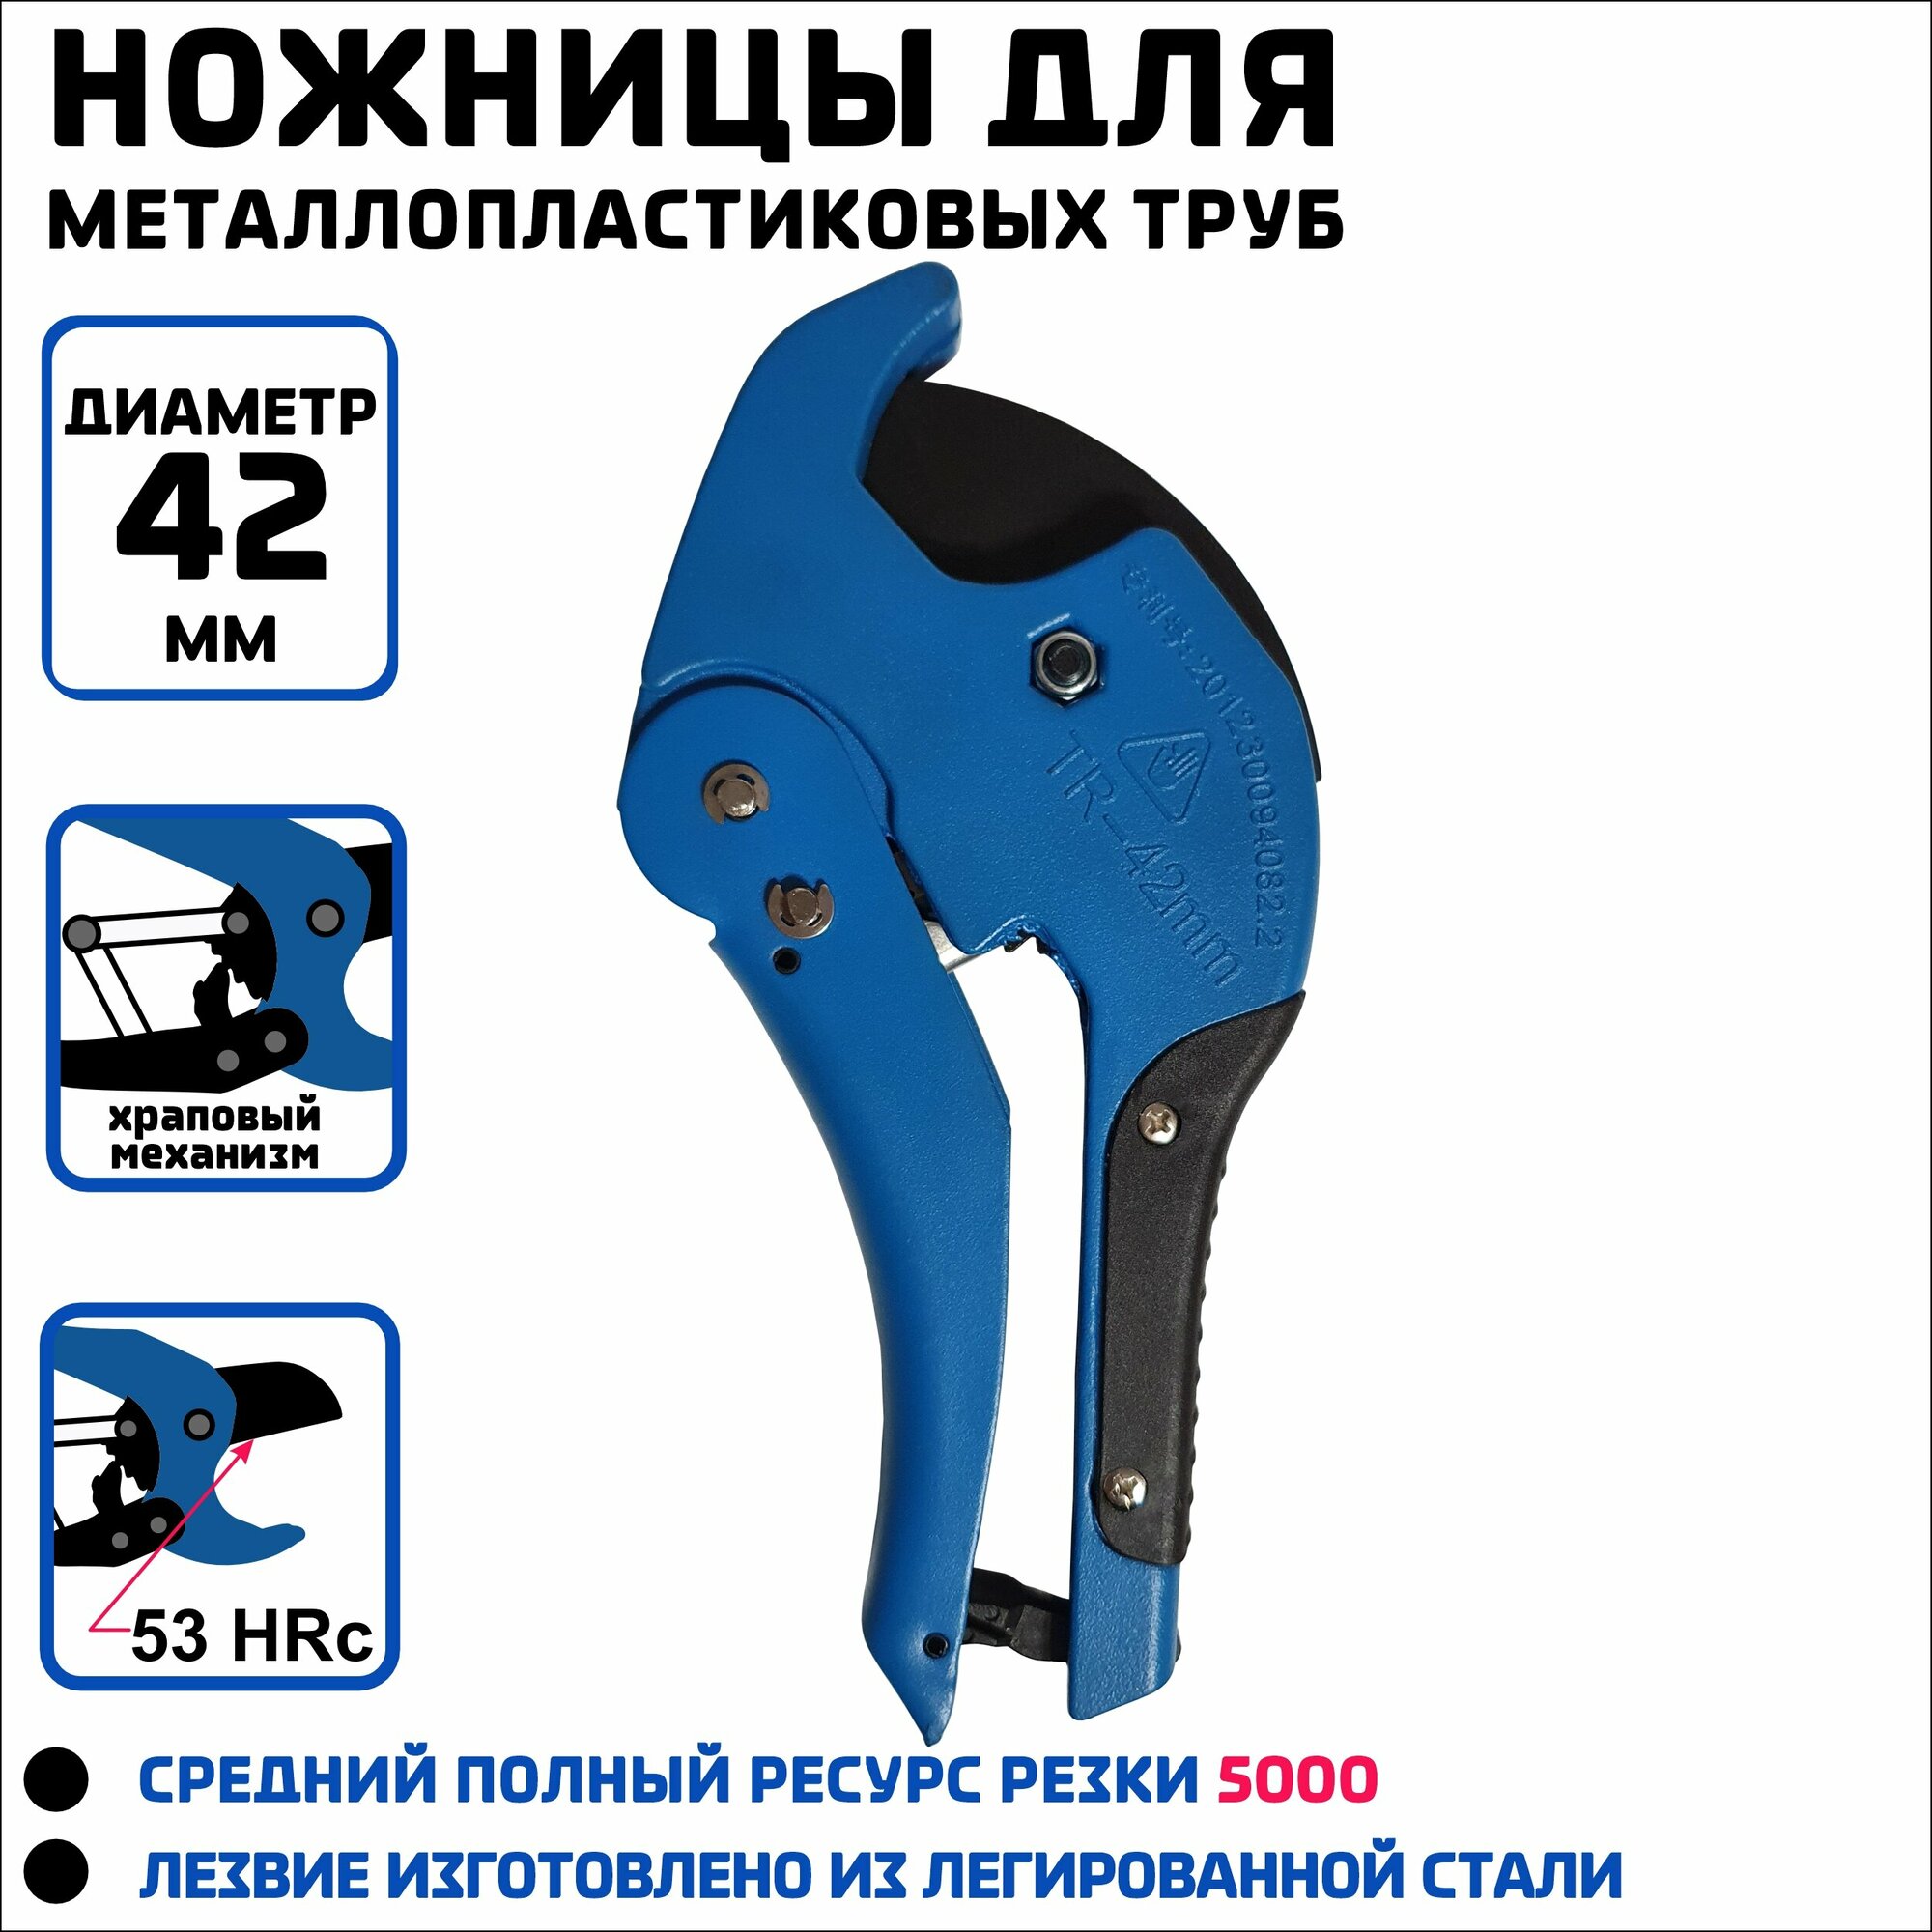 Ножницы усиленные для резки ПВХ труб VER8 06 D до 42мм/ ручной труборез/ ножницы для металлопластиковых труб синие